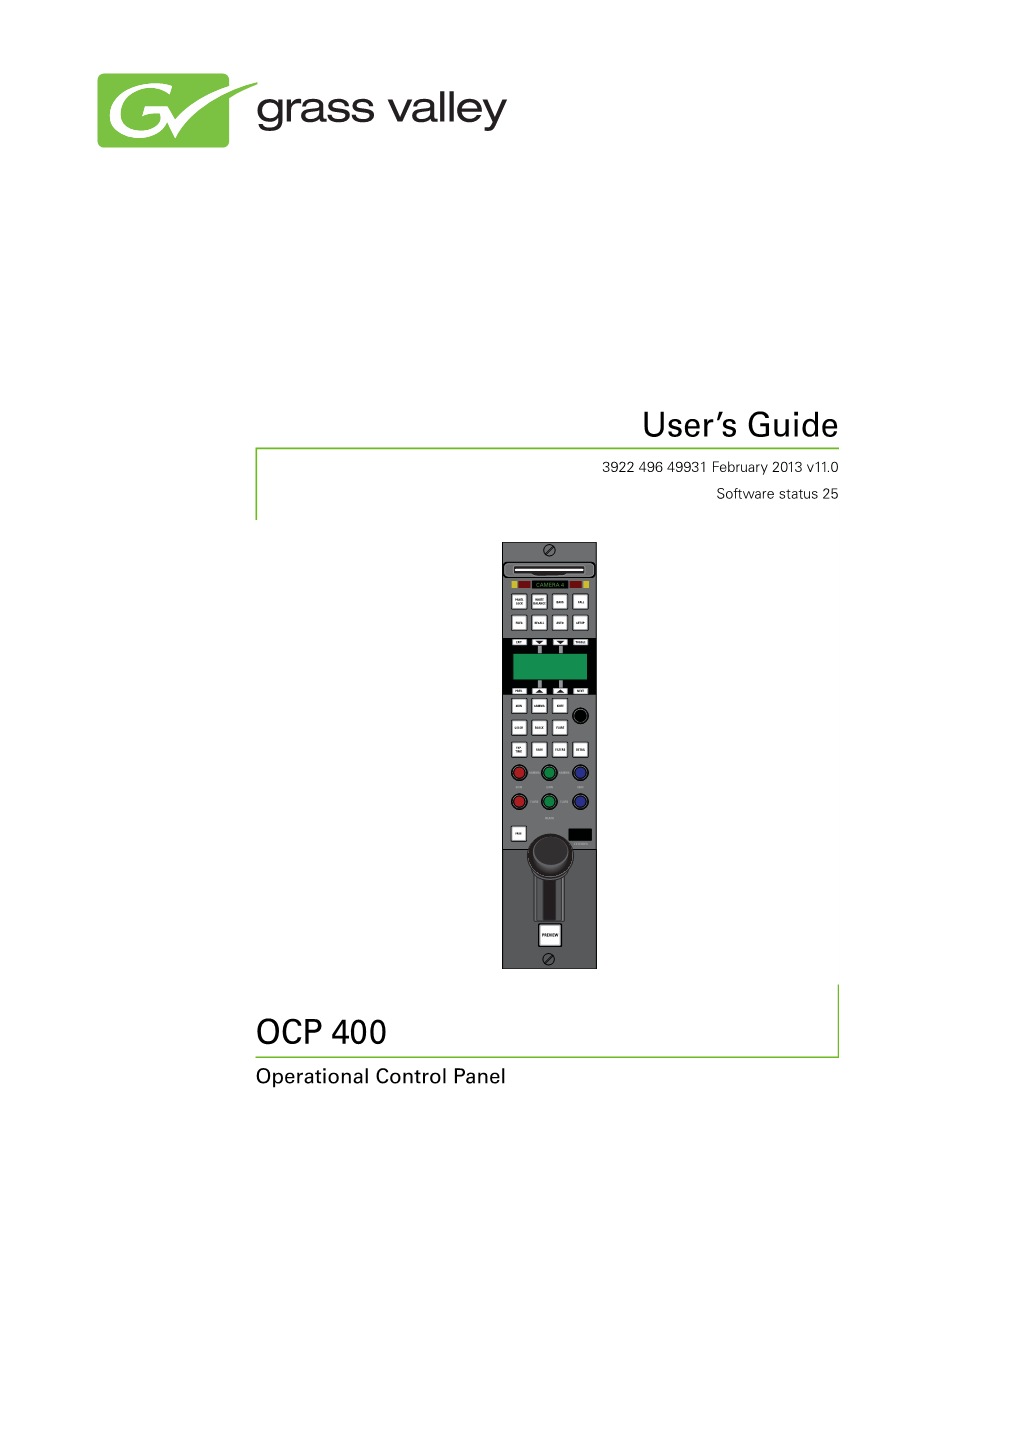 OCP 400 User's Guide